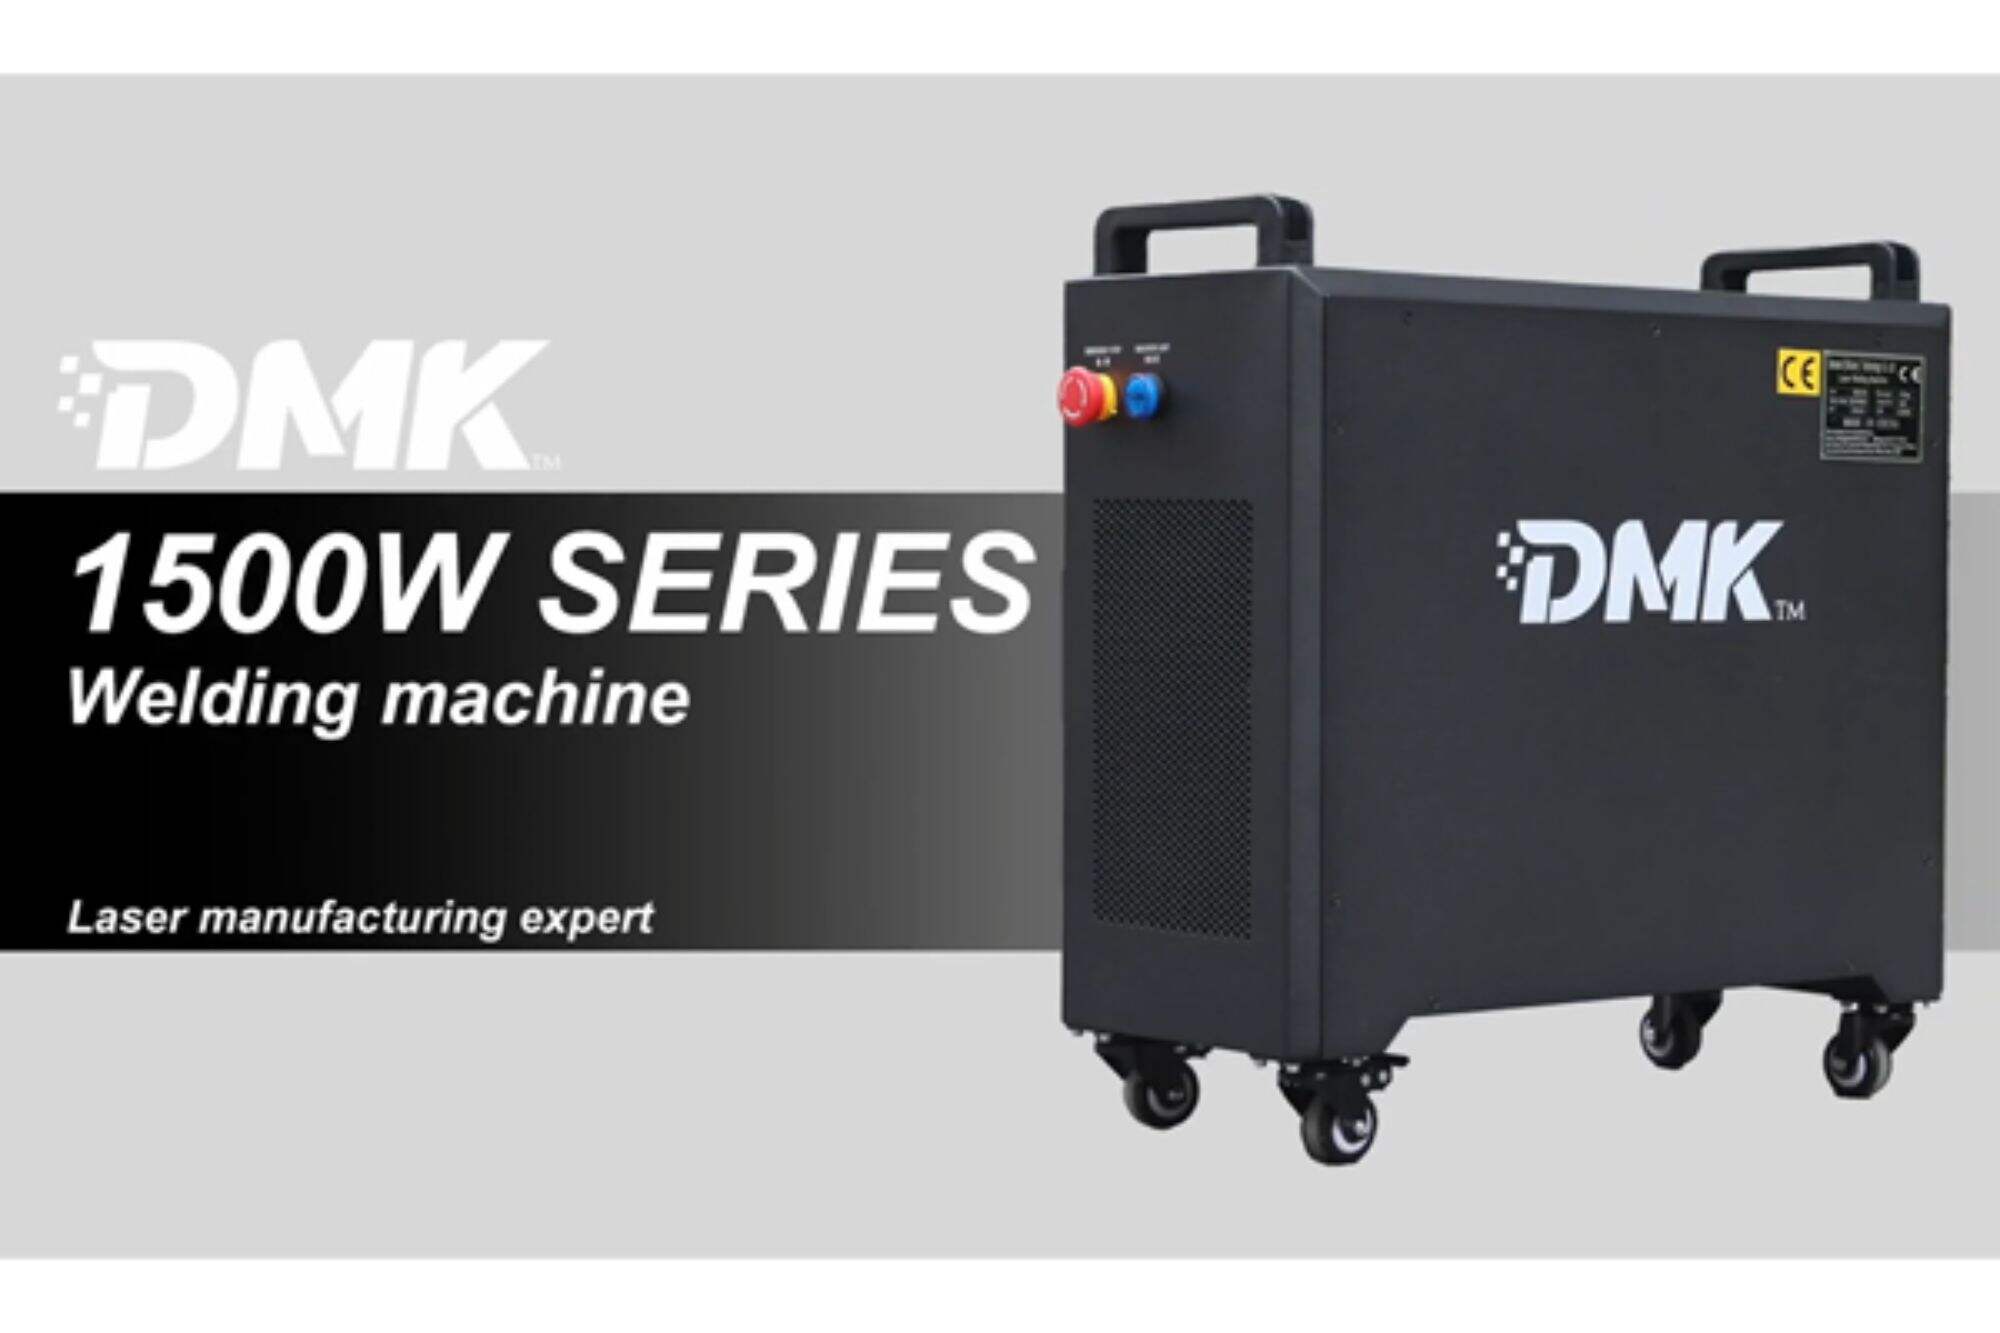 Ruční laserový vzduchem chlazený svařovací stroj DMK 1500w